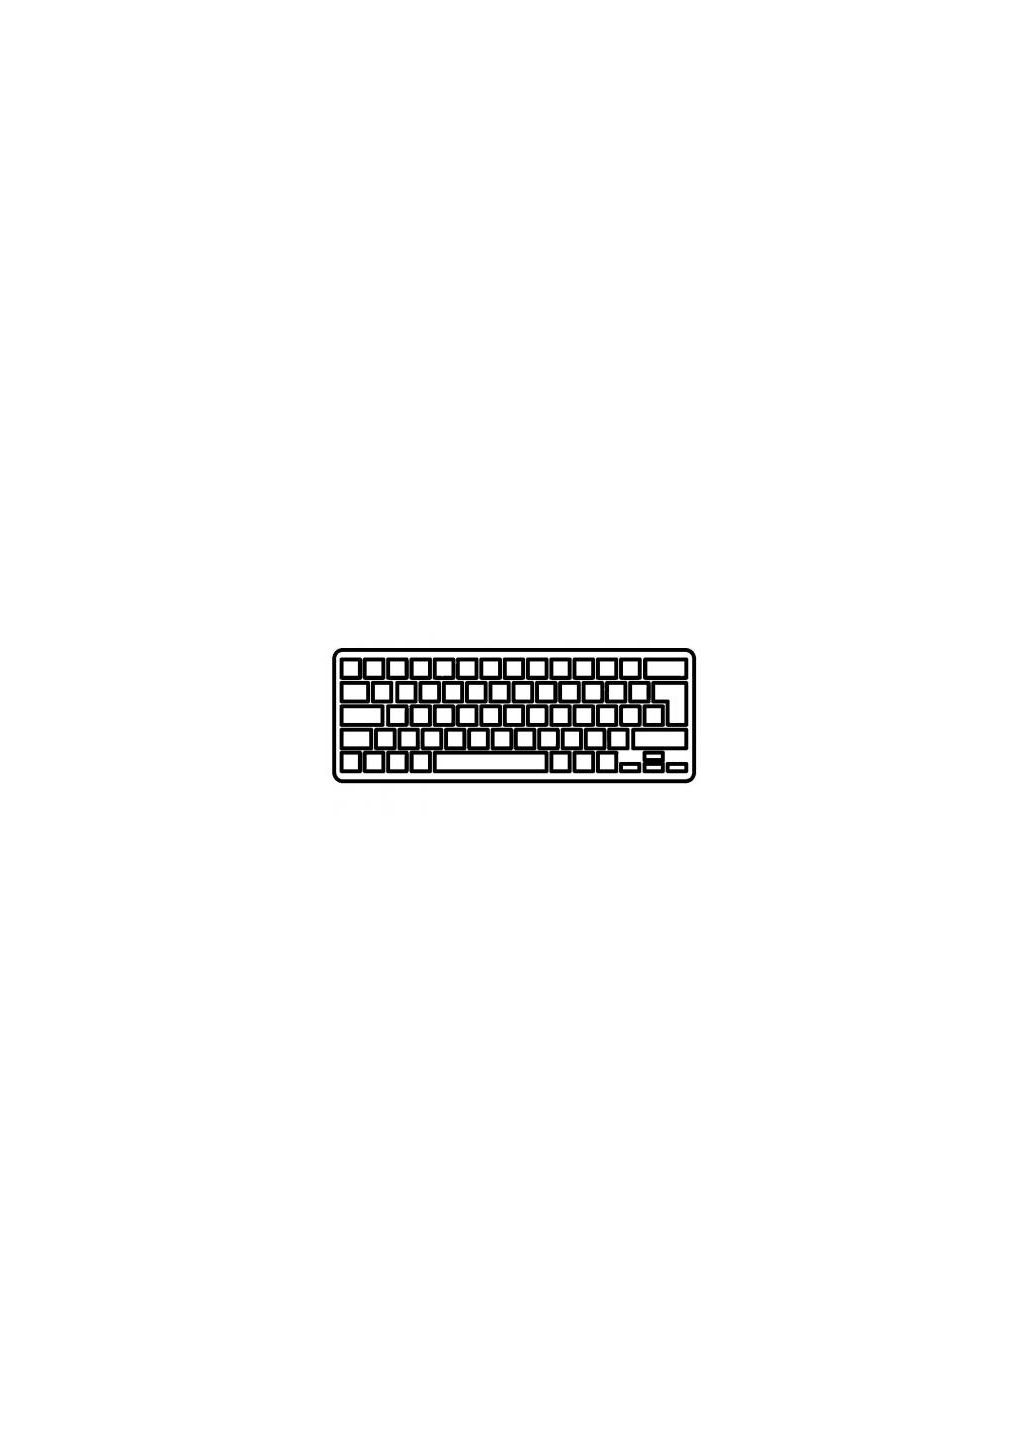 Клавиатура ноутбука Aspire V5471/V5-431 Series черная с подсветкой/без рамки UA (A43556) Acer aspire v5-471/v5-431 series черная с подсветкой/бе (276707560)